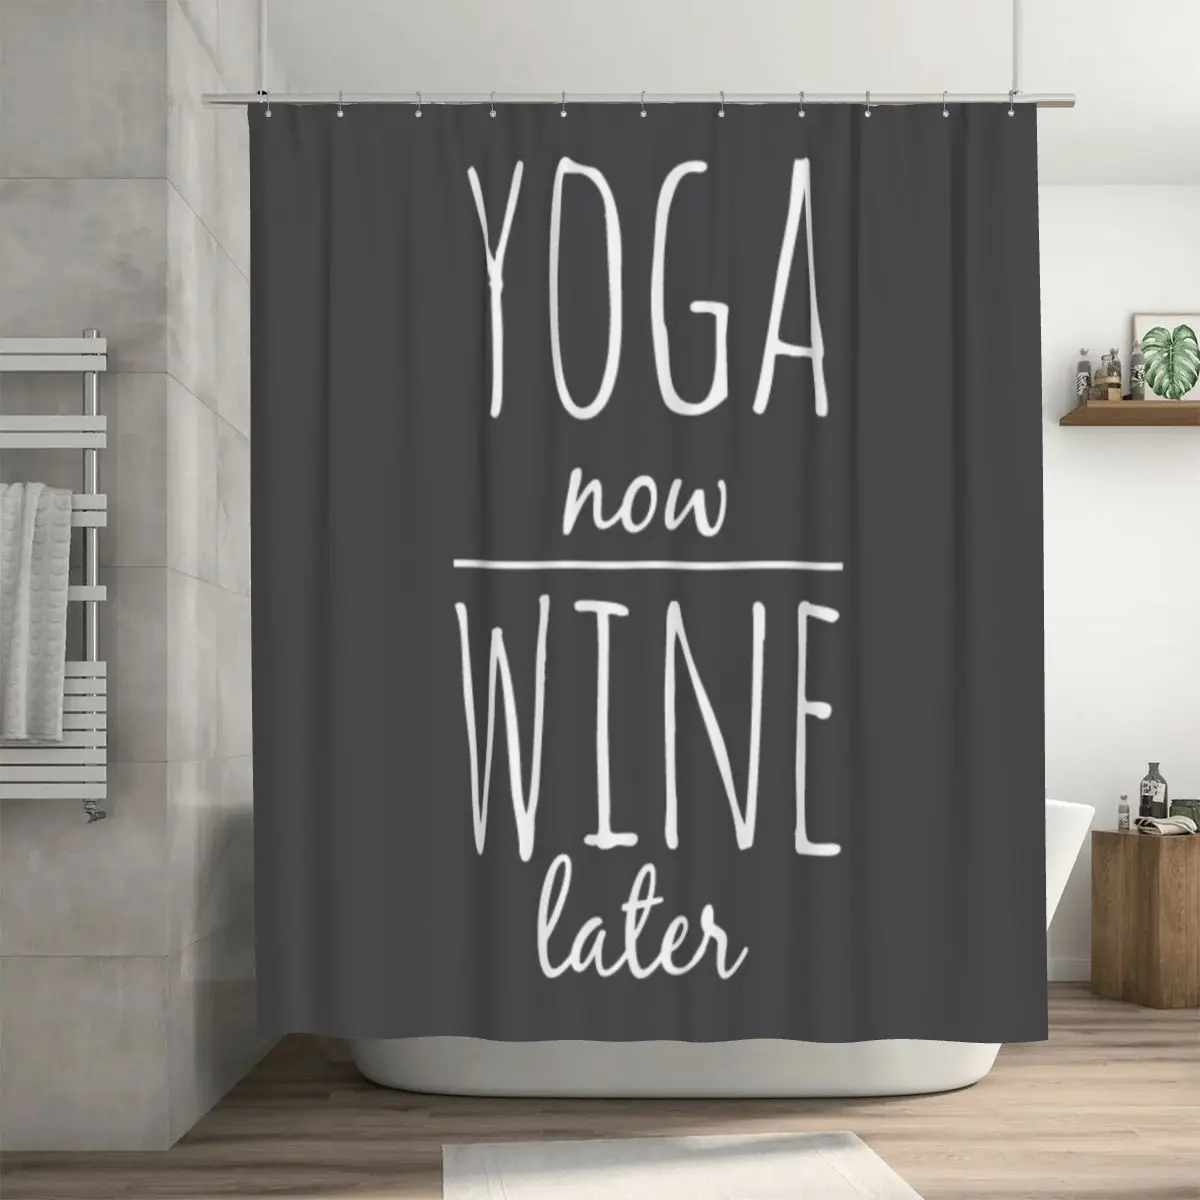 

Занавеска для душа Yoga Now Wine After 72x72in с крючками, самодельная защита конфиденциальности с узором